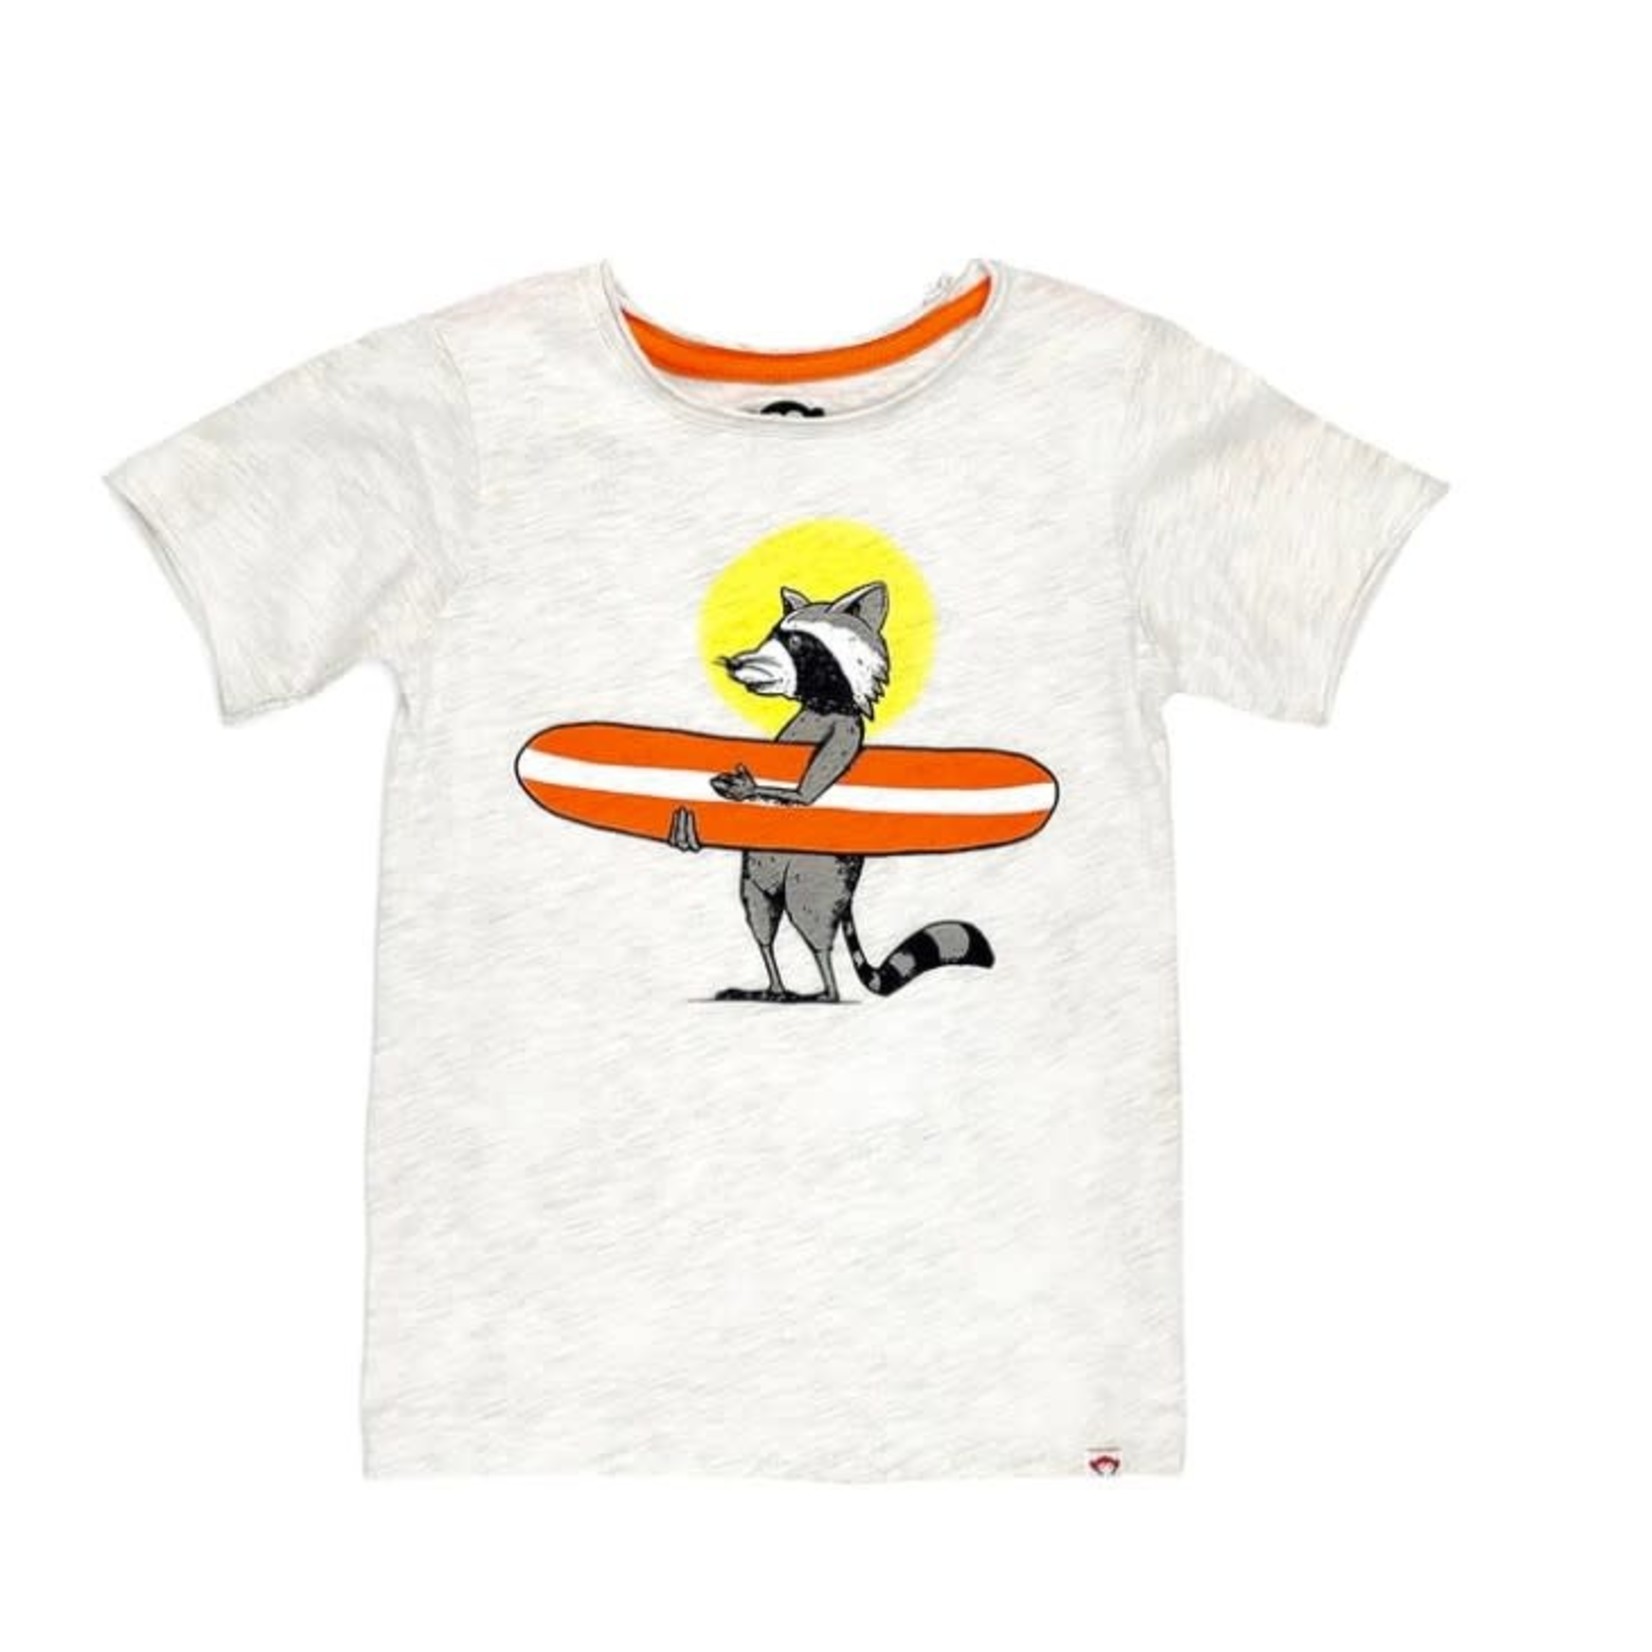 Appaman APPAMAN - T-shirt gris chiné à manches courtes imprimé de raton au surf 'Wild Surf''